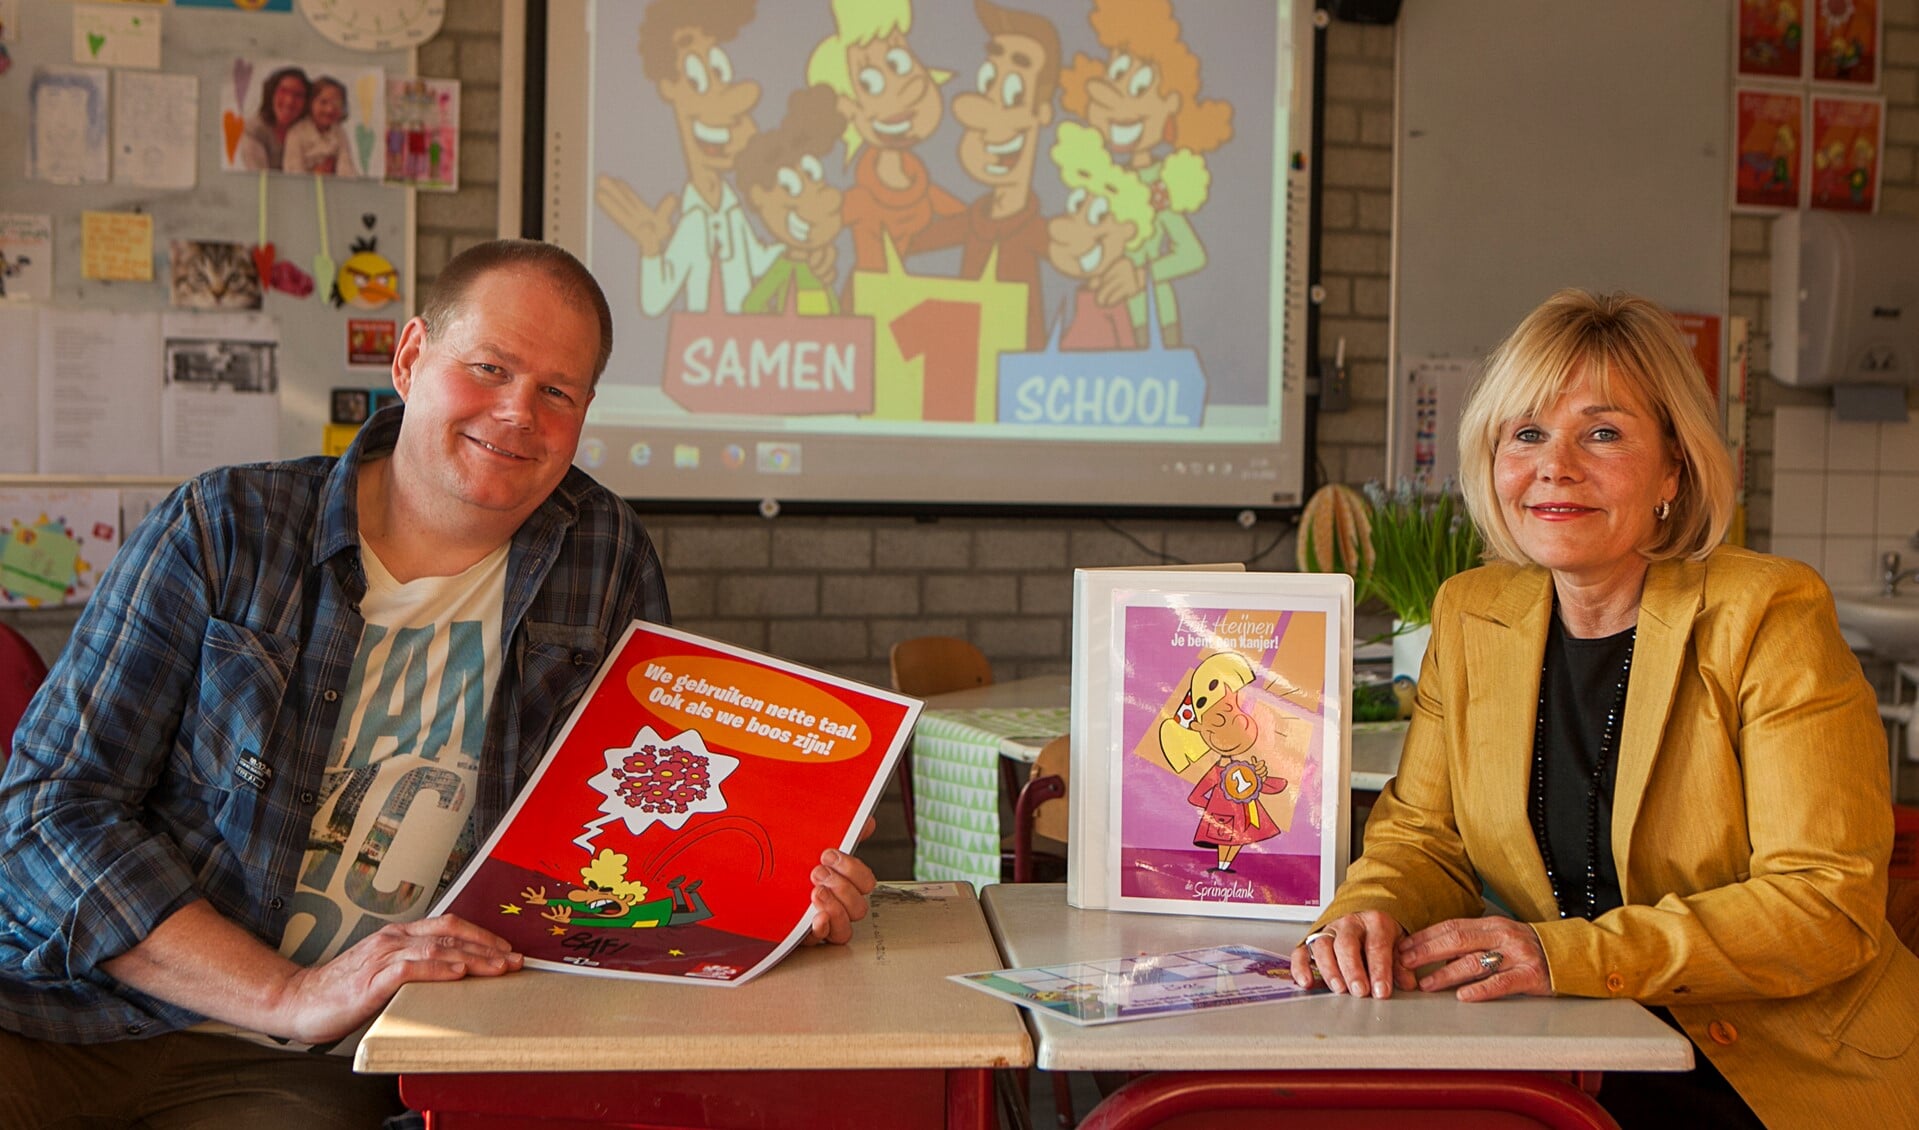 Joop van Balen en Yvonne Vlaanderen presenteerden op De Springplank hun lesmethode samen1school aan andere scholen.